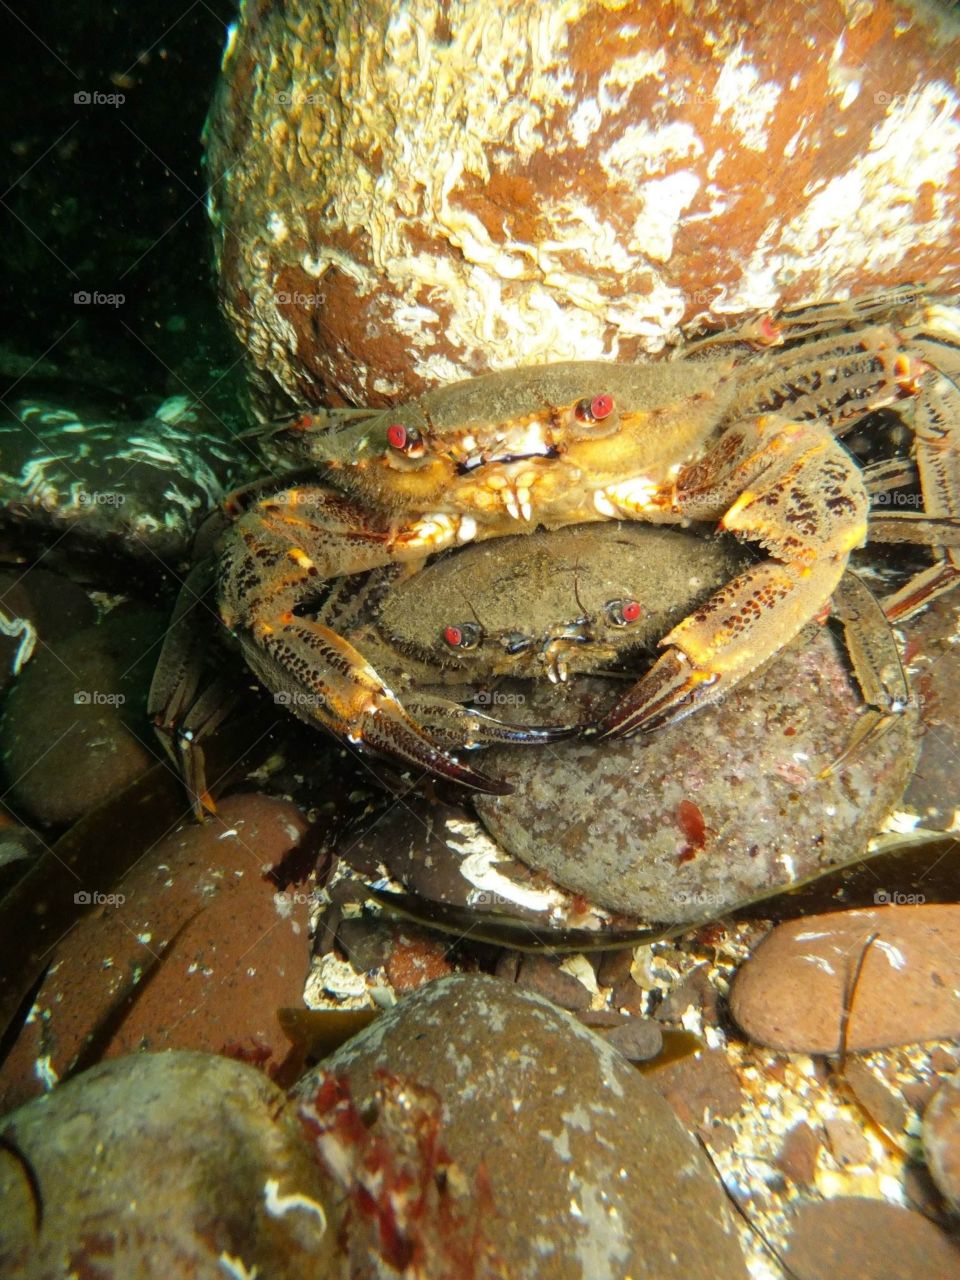 Shore crabs